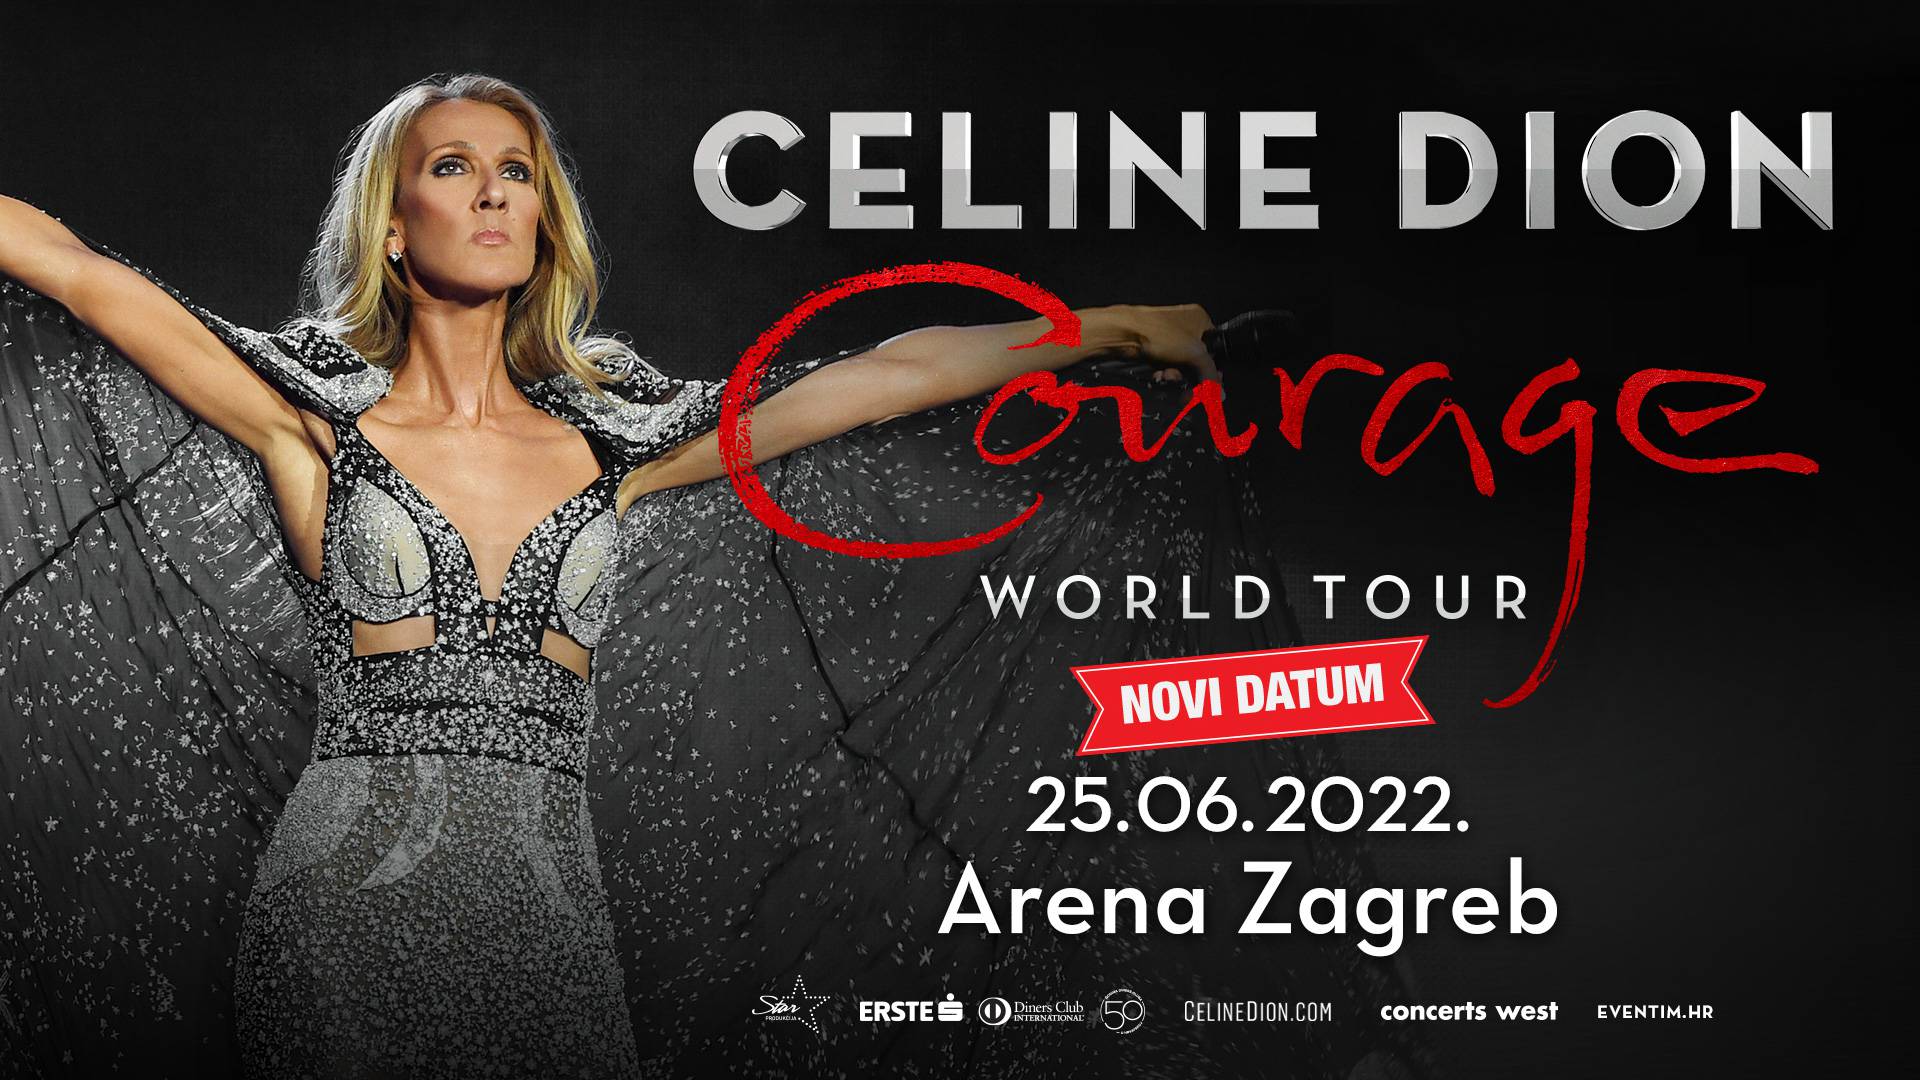 Celine Dion je odgodila turneju: U Zagreb stiže 25. lipnja 2022.